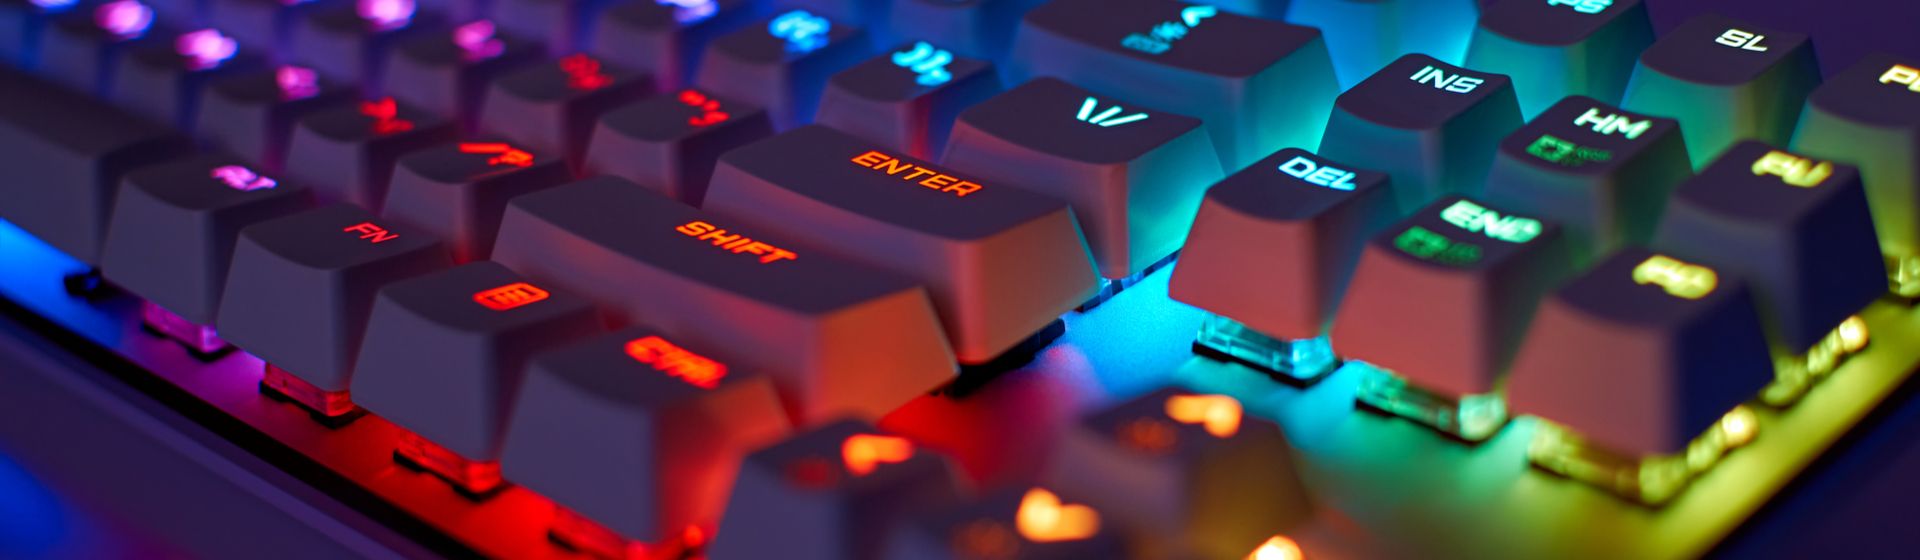 Capa do post: Melhor teclado mecânico barato: 5 modelos para comprar